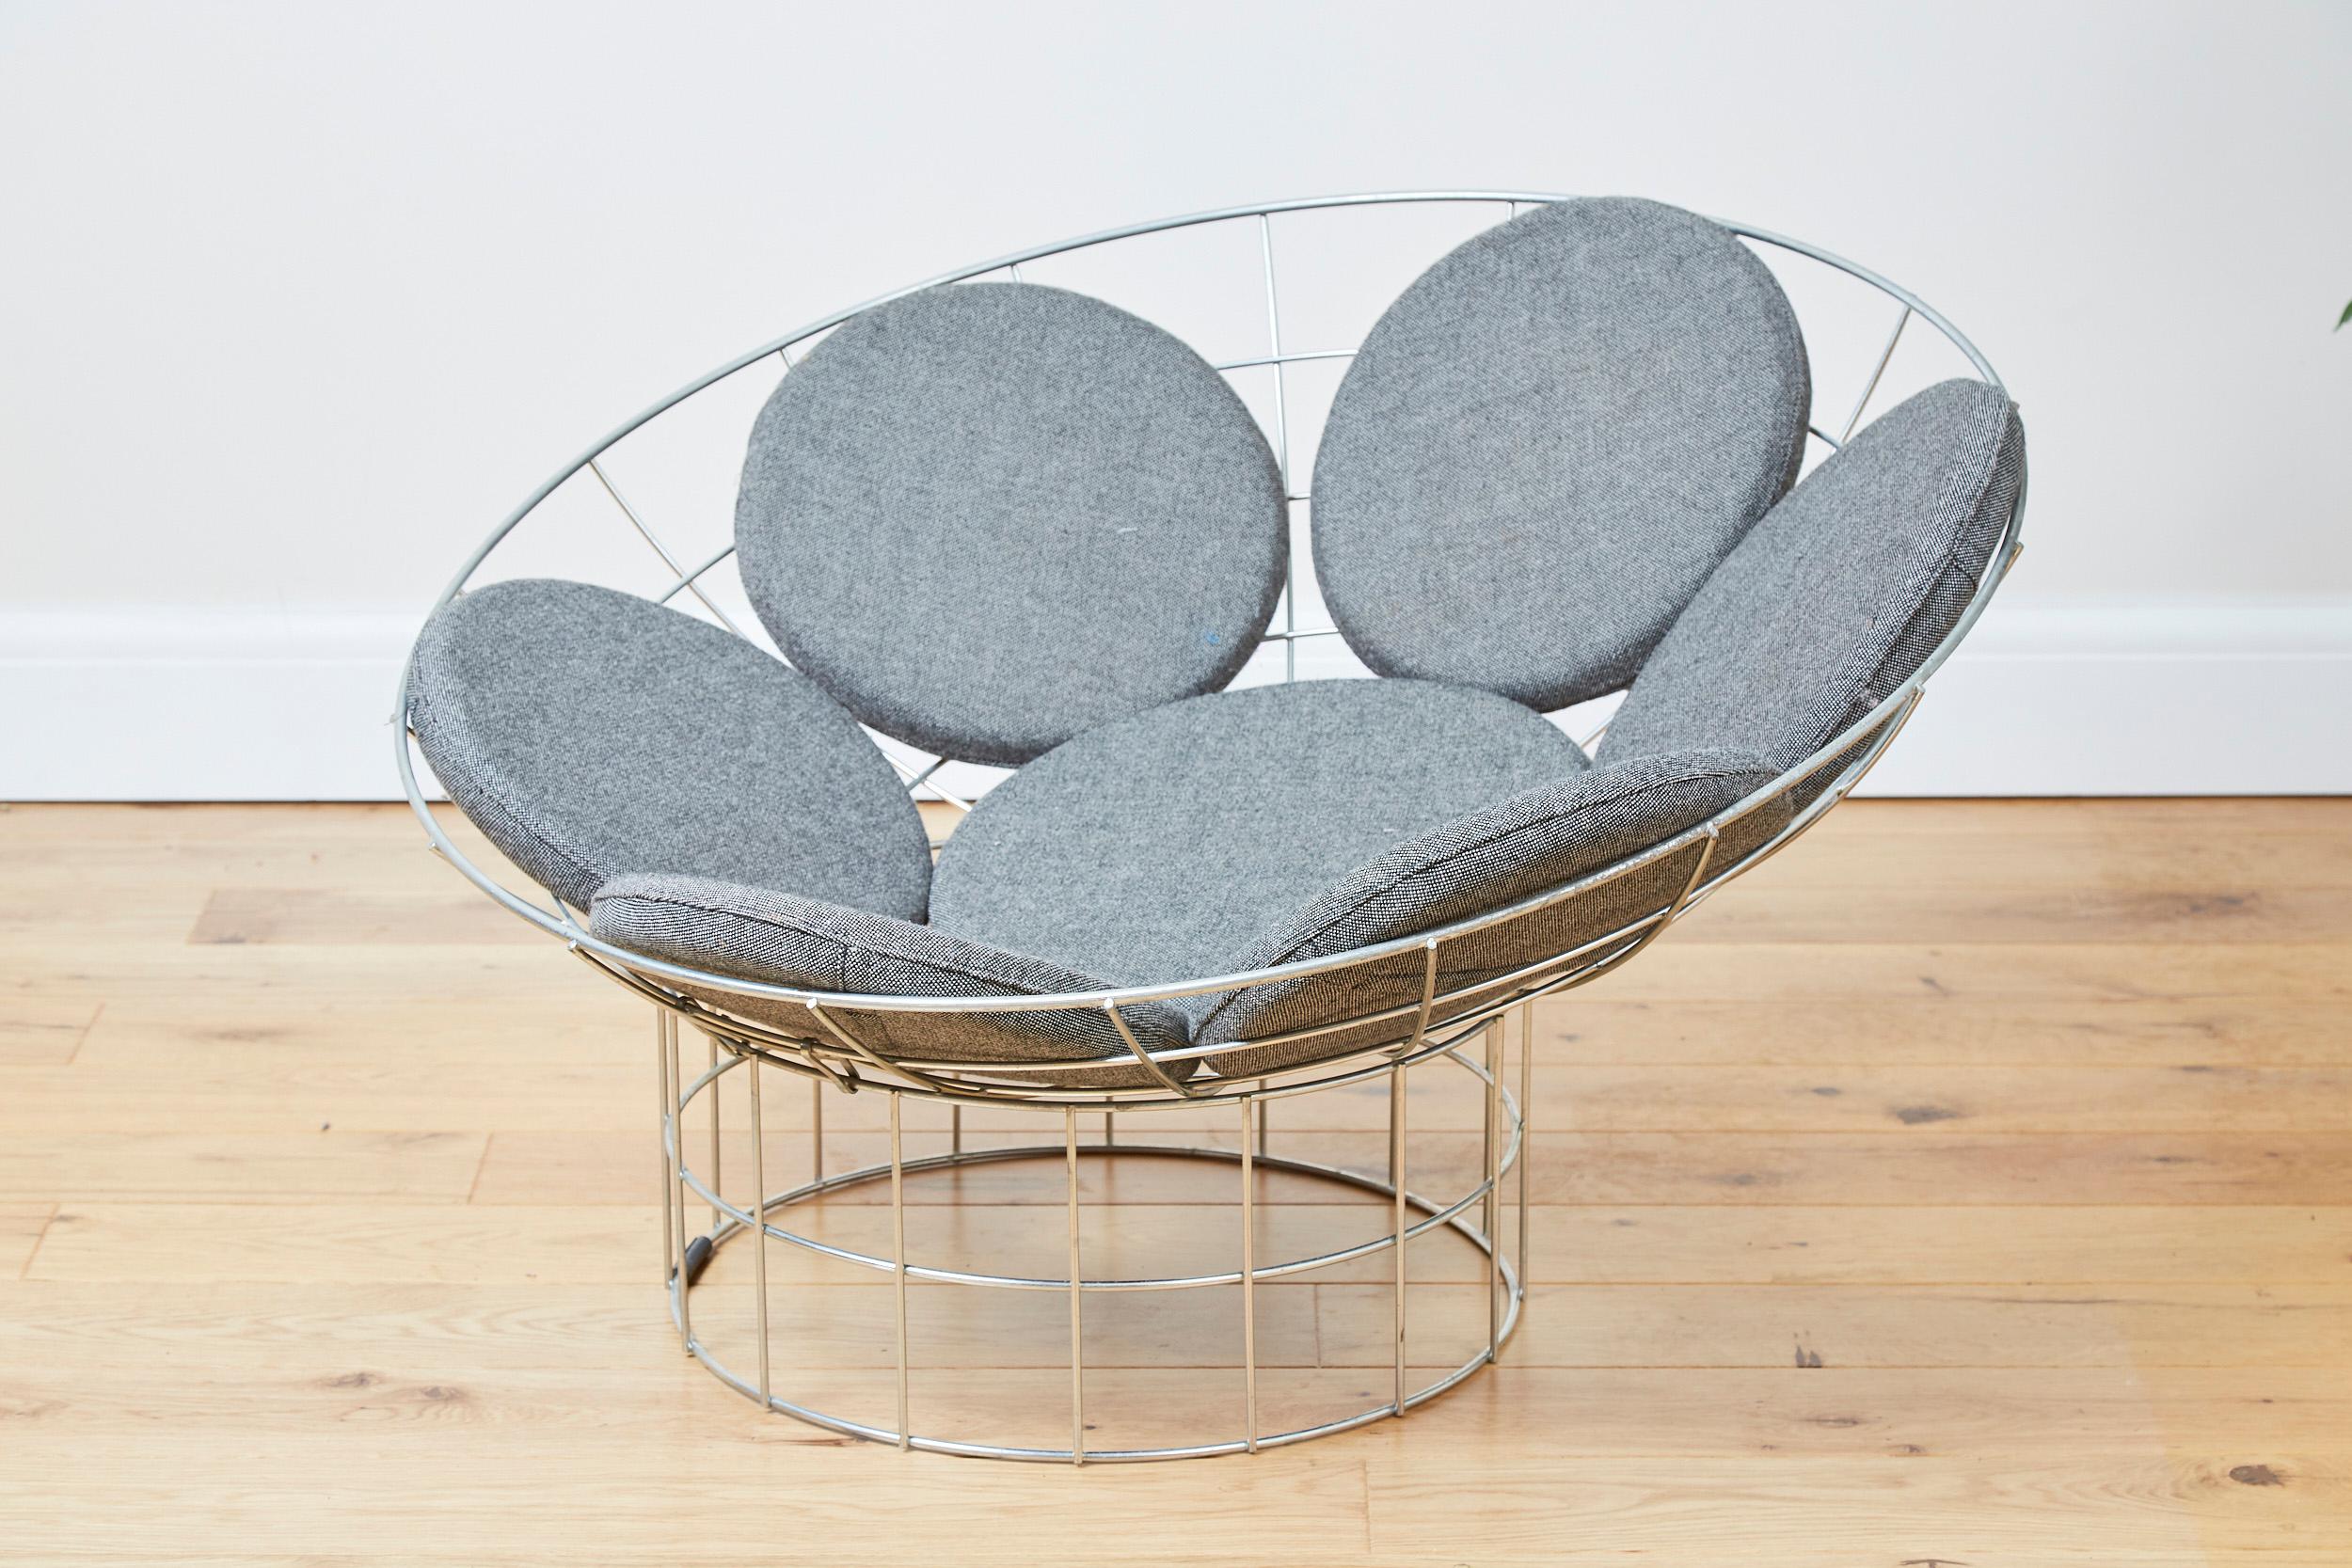 Conçue par Verner Panton en 1959 et produite par Plus-Linje au Danemark en 1960, la chaise Peacock est un classique du design.

Composé d'un plateau en forme de cuvette et d'un pied cylindrique en tige d'acier inoxydable.
Les deux parties sont